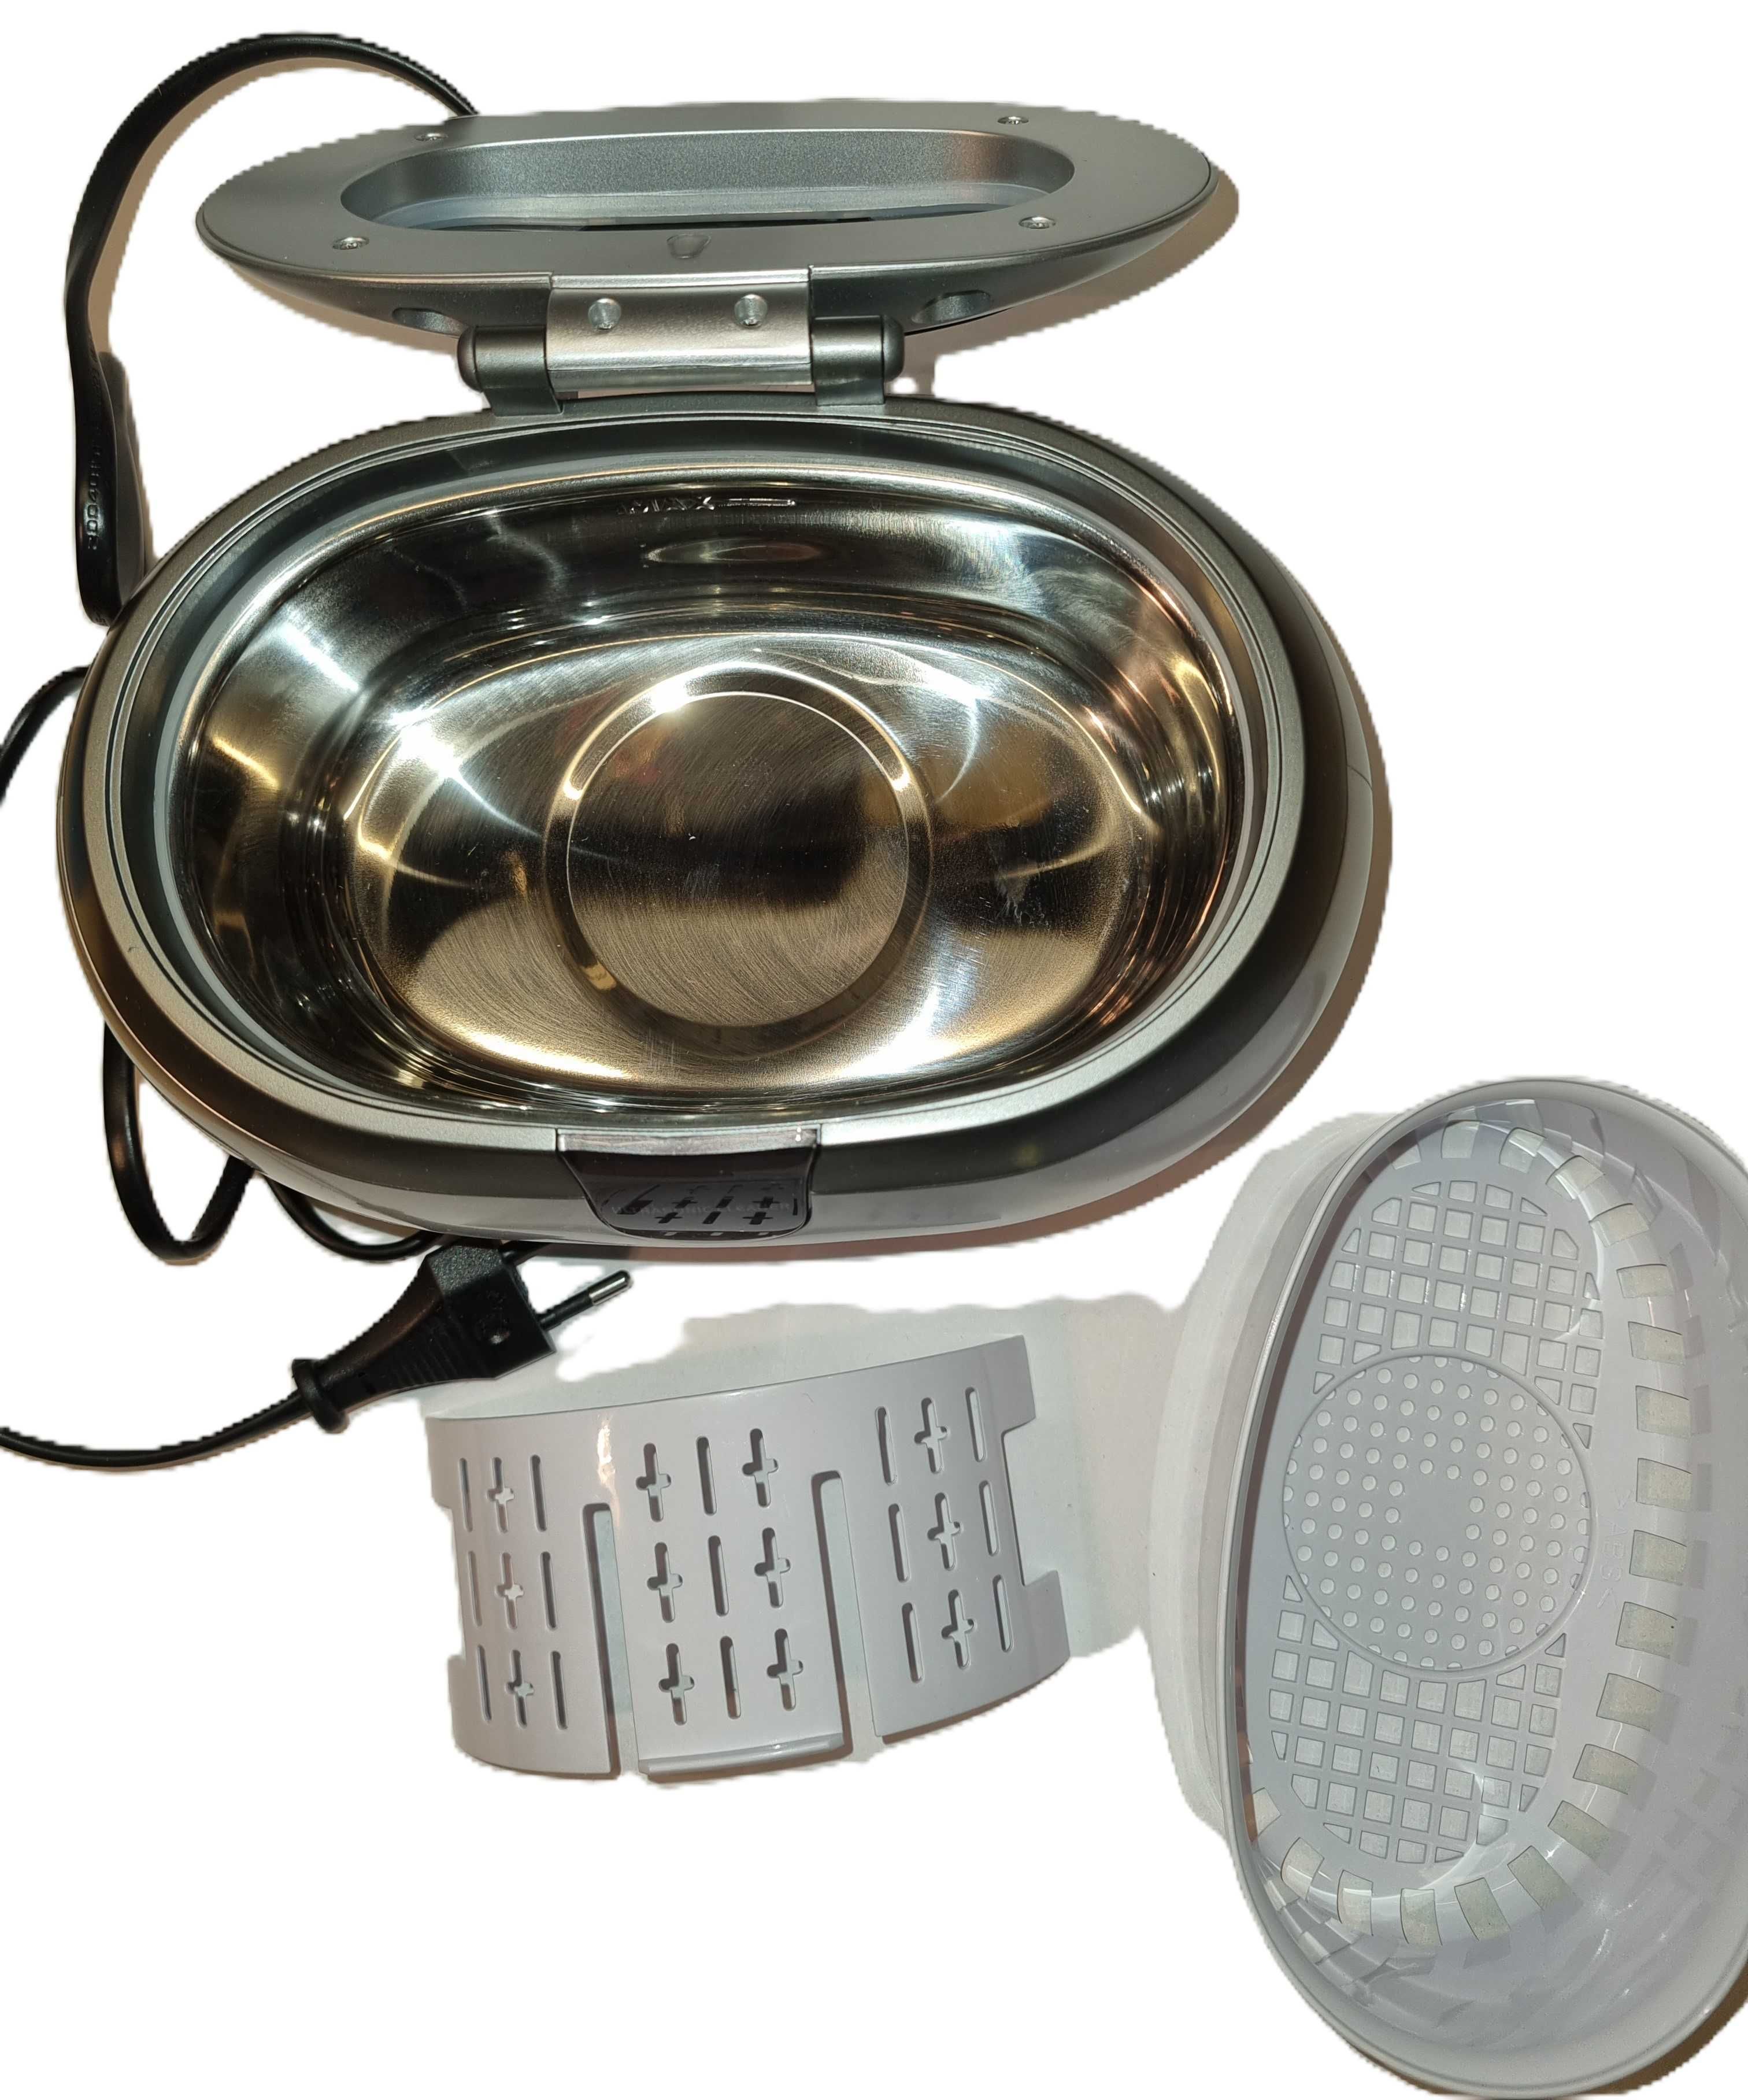 Myjka ultradźwiękowa Vloxo CD-2800  biżuteria elektronika sterylizacja